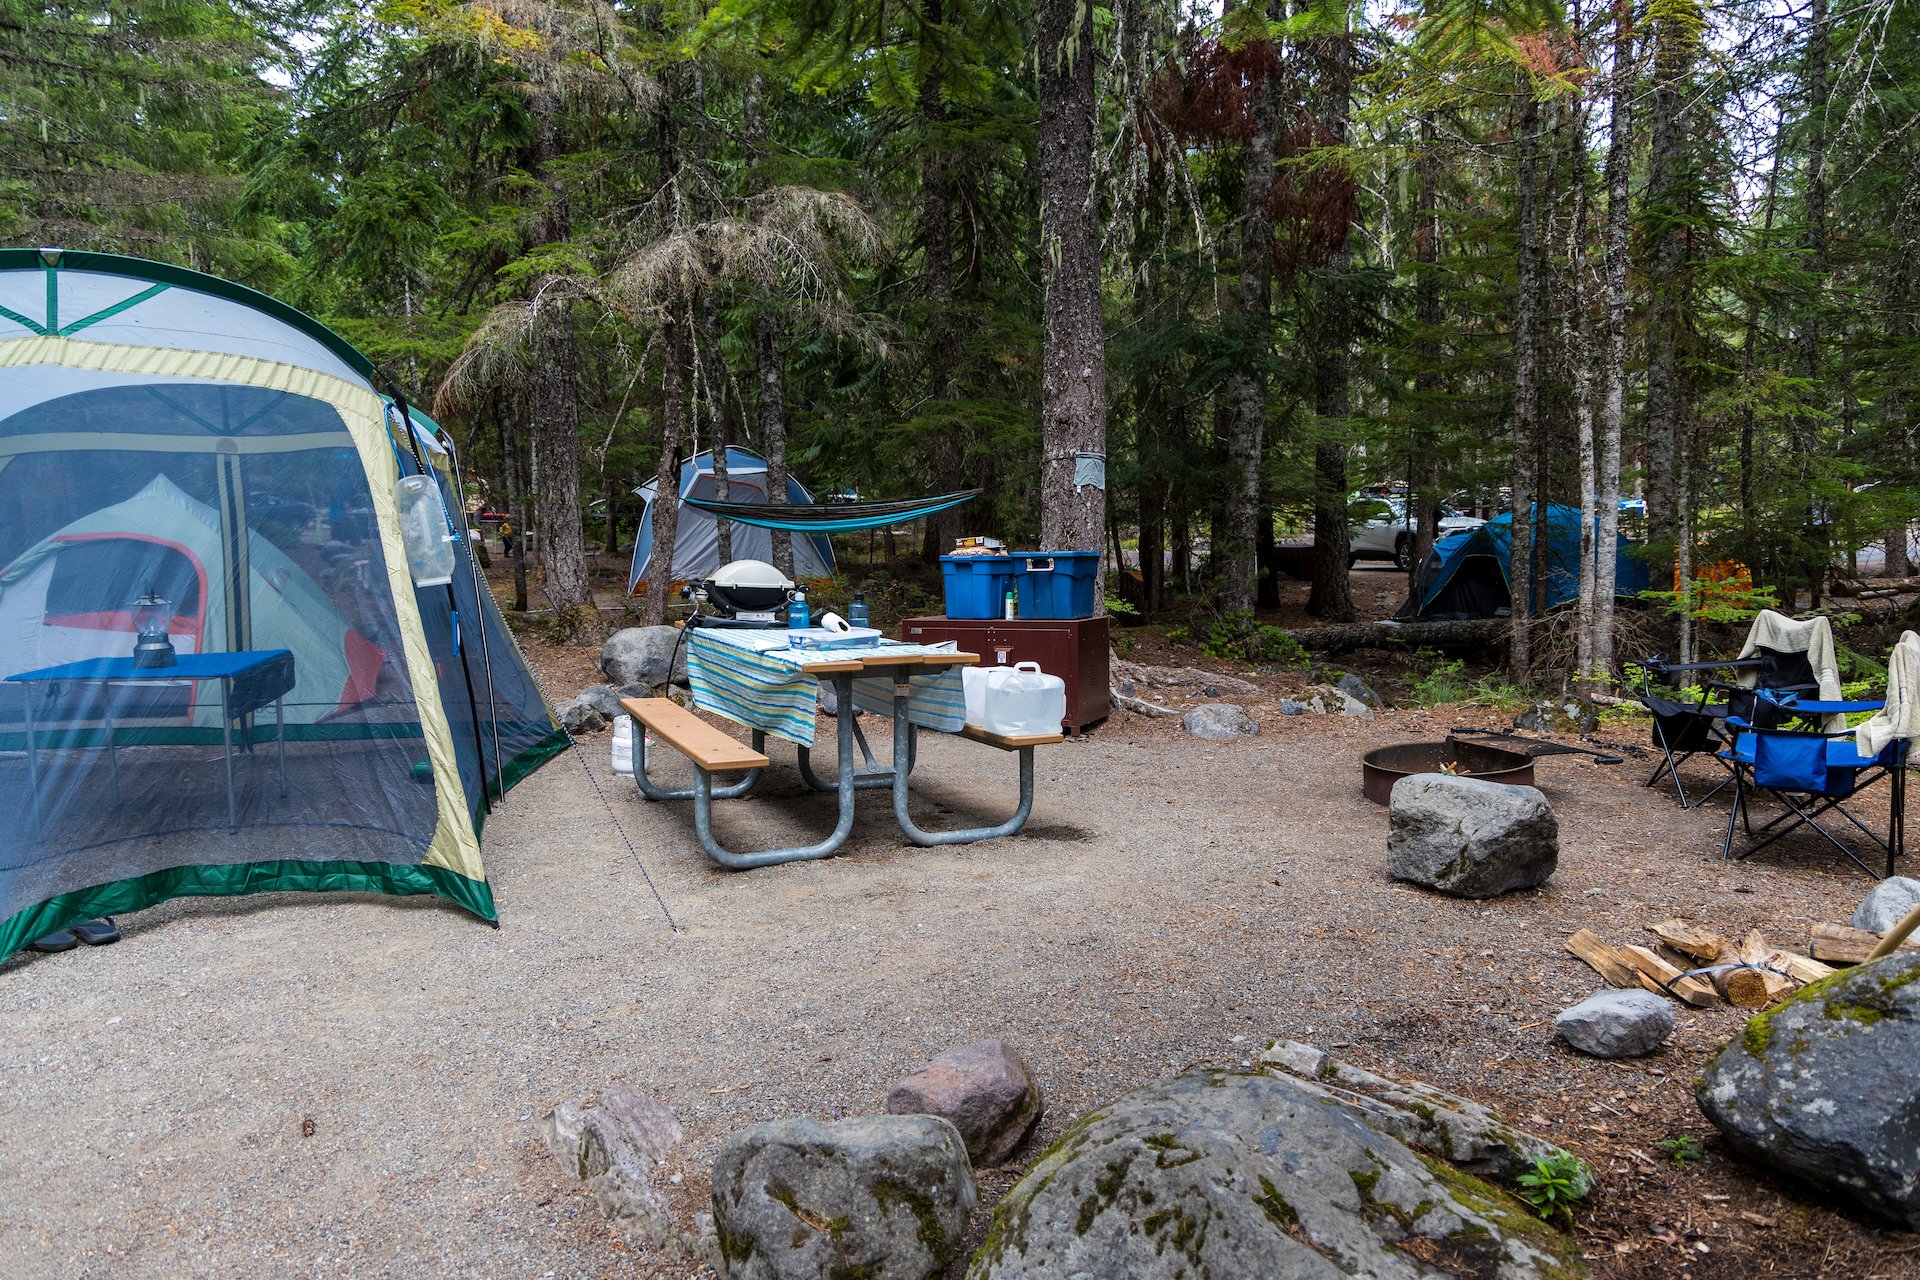  Our campsite! 